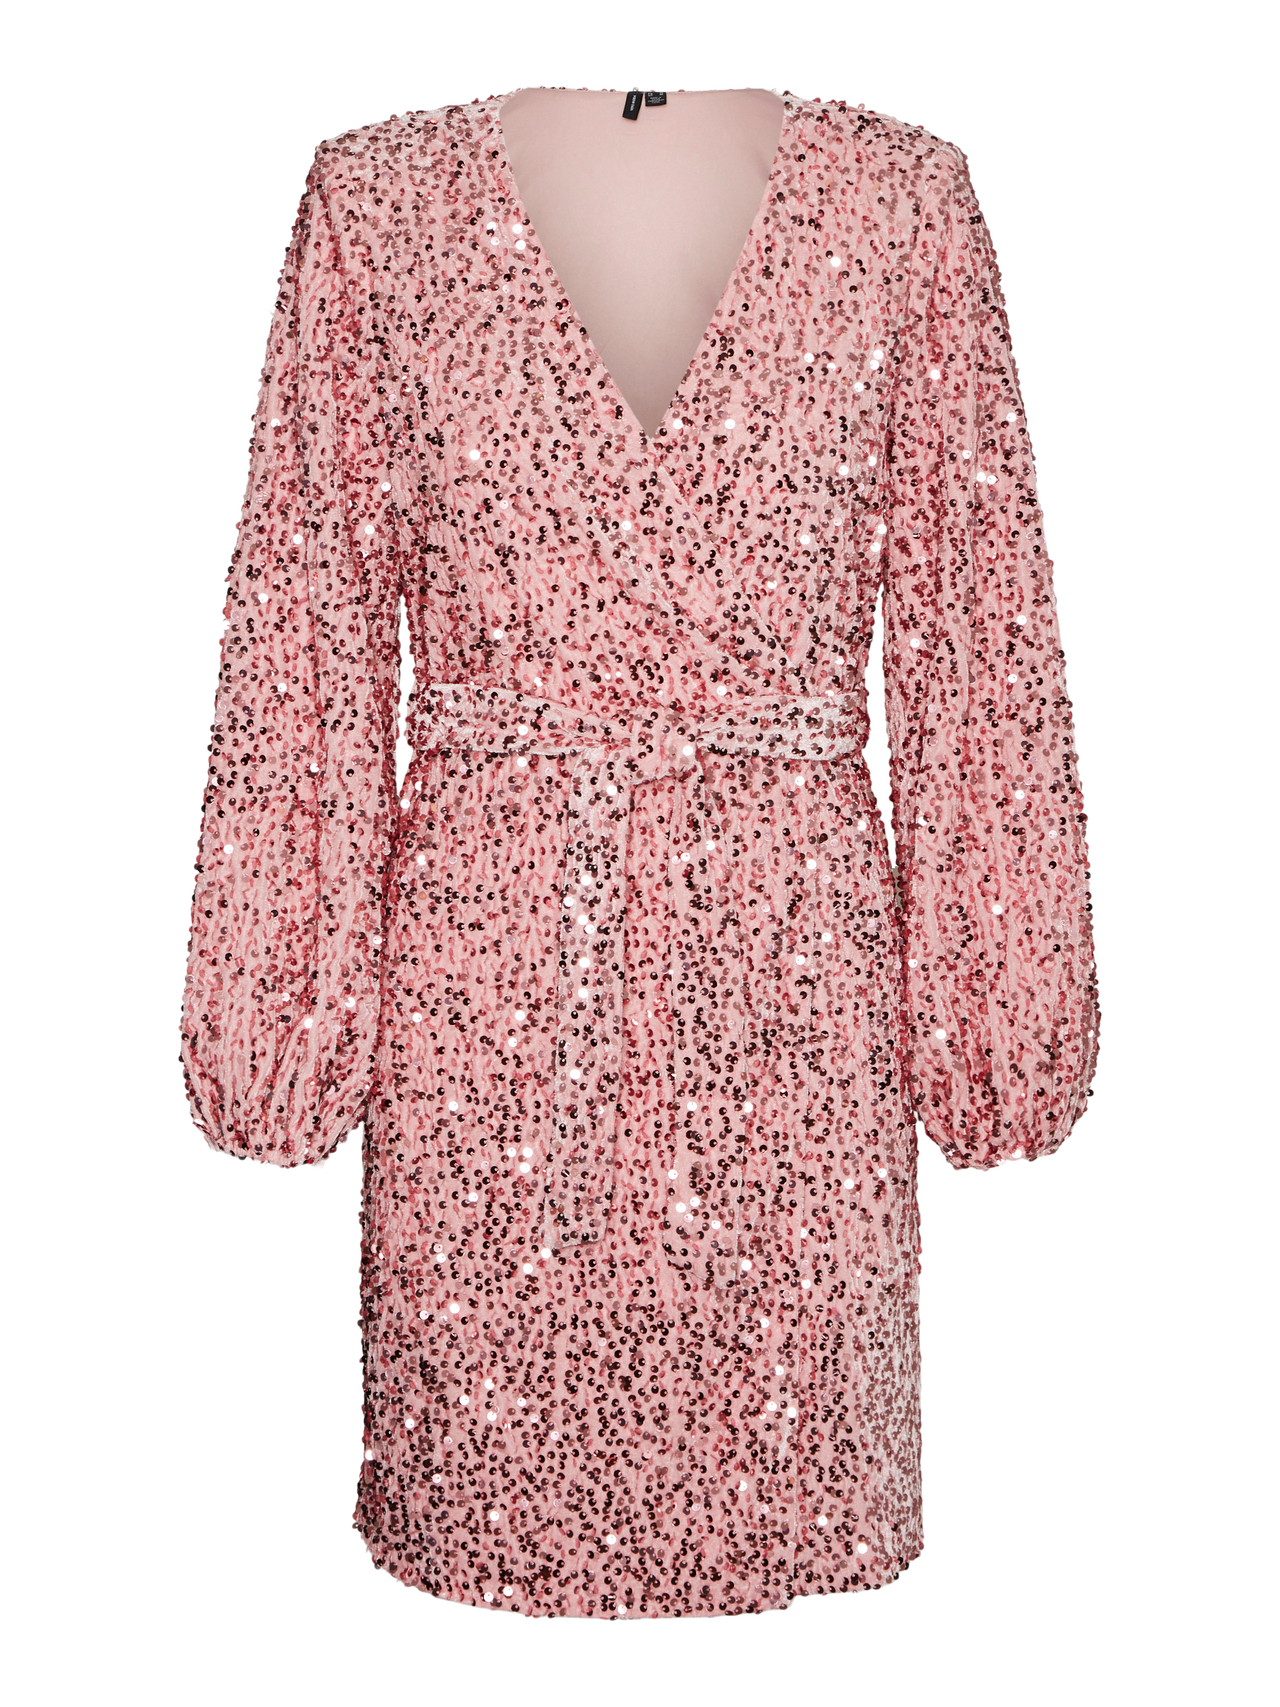 Vero Moda VMBELLA Kort kjole -Candy Pink - 10285030